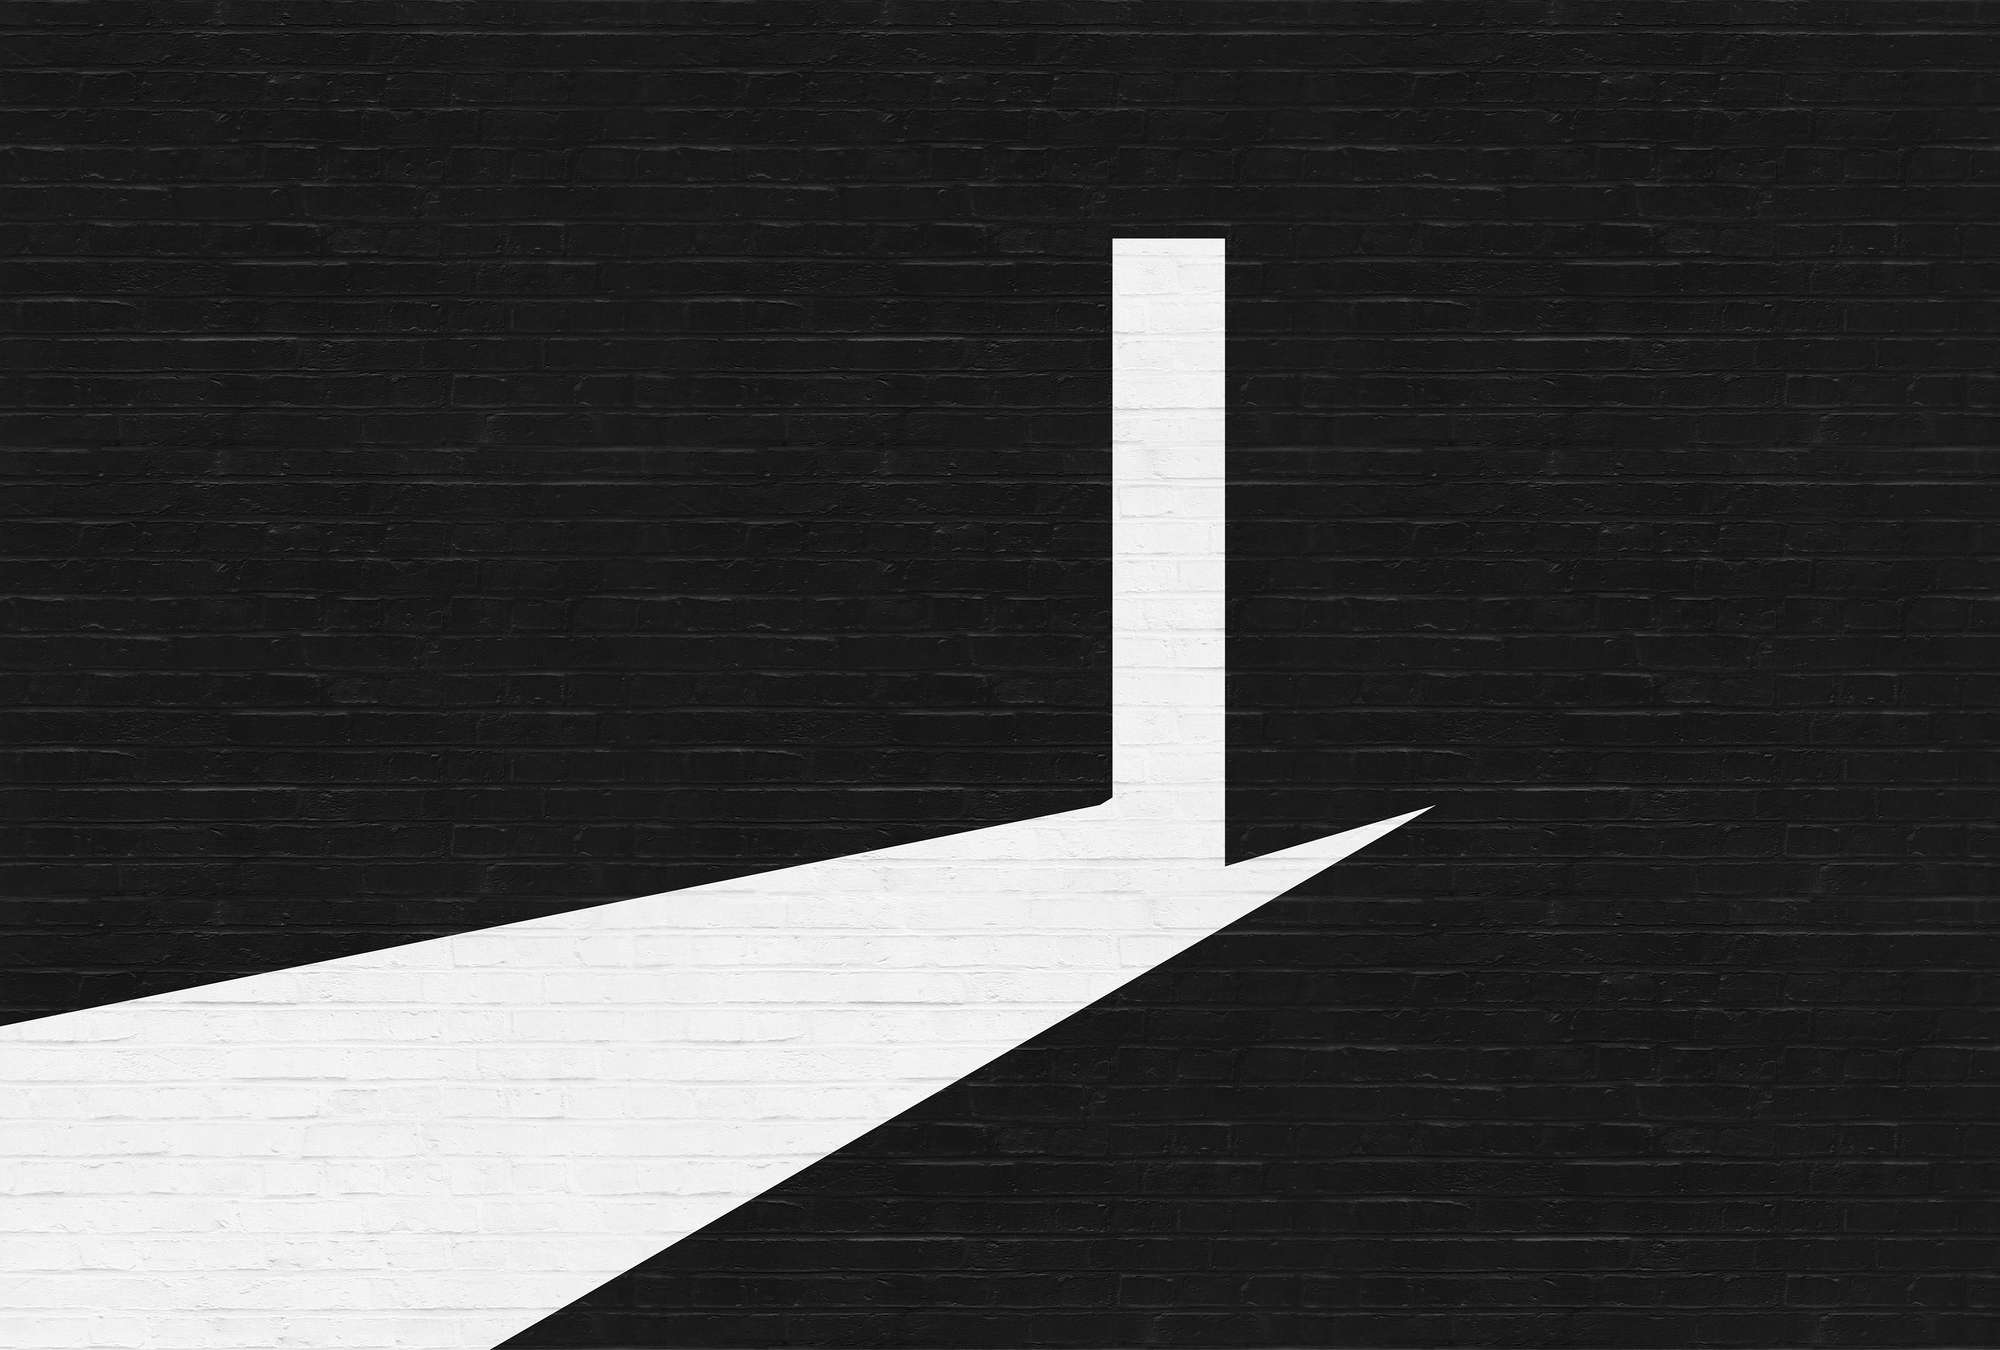             Fototapete Mauer-Ziegel, Schwarz-Weiß Grafik-Design – Weiß, Schwarz
        